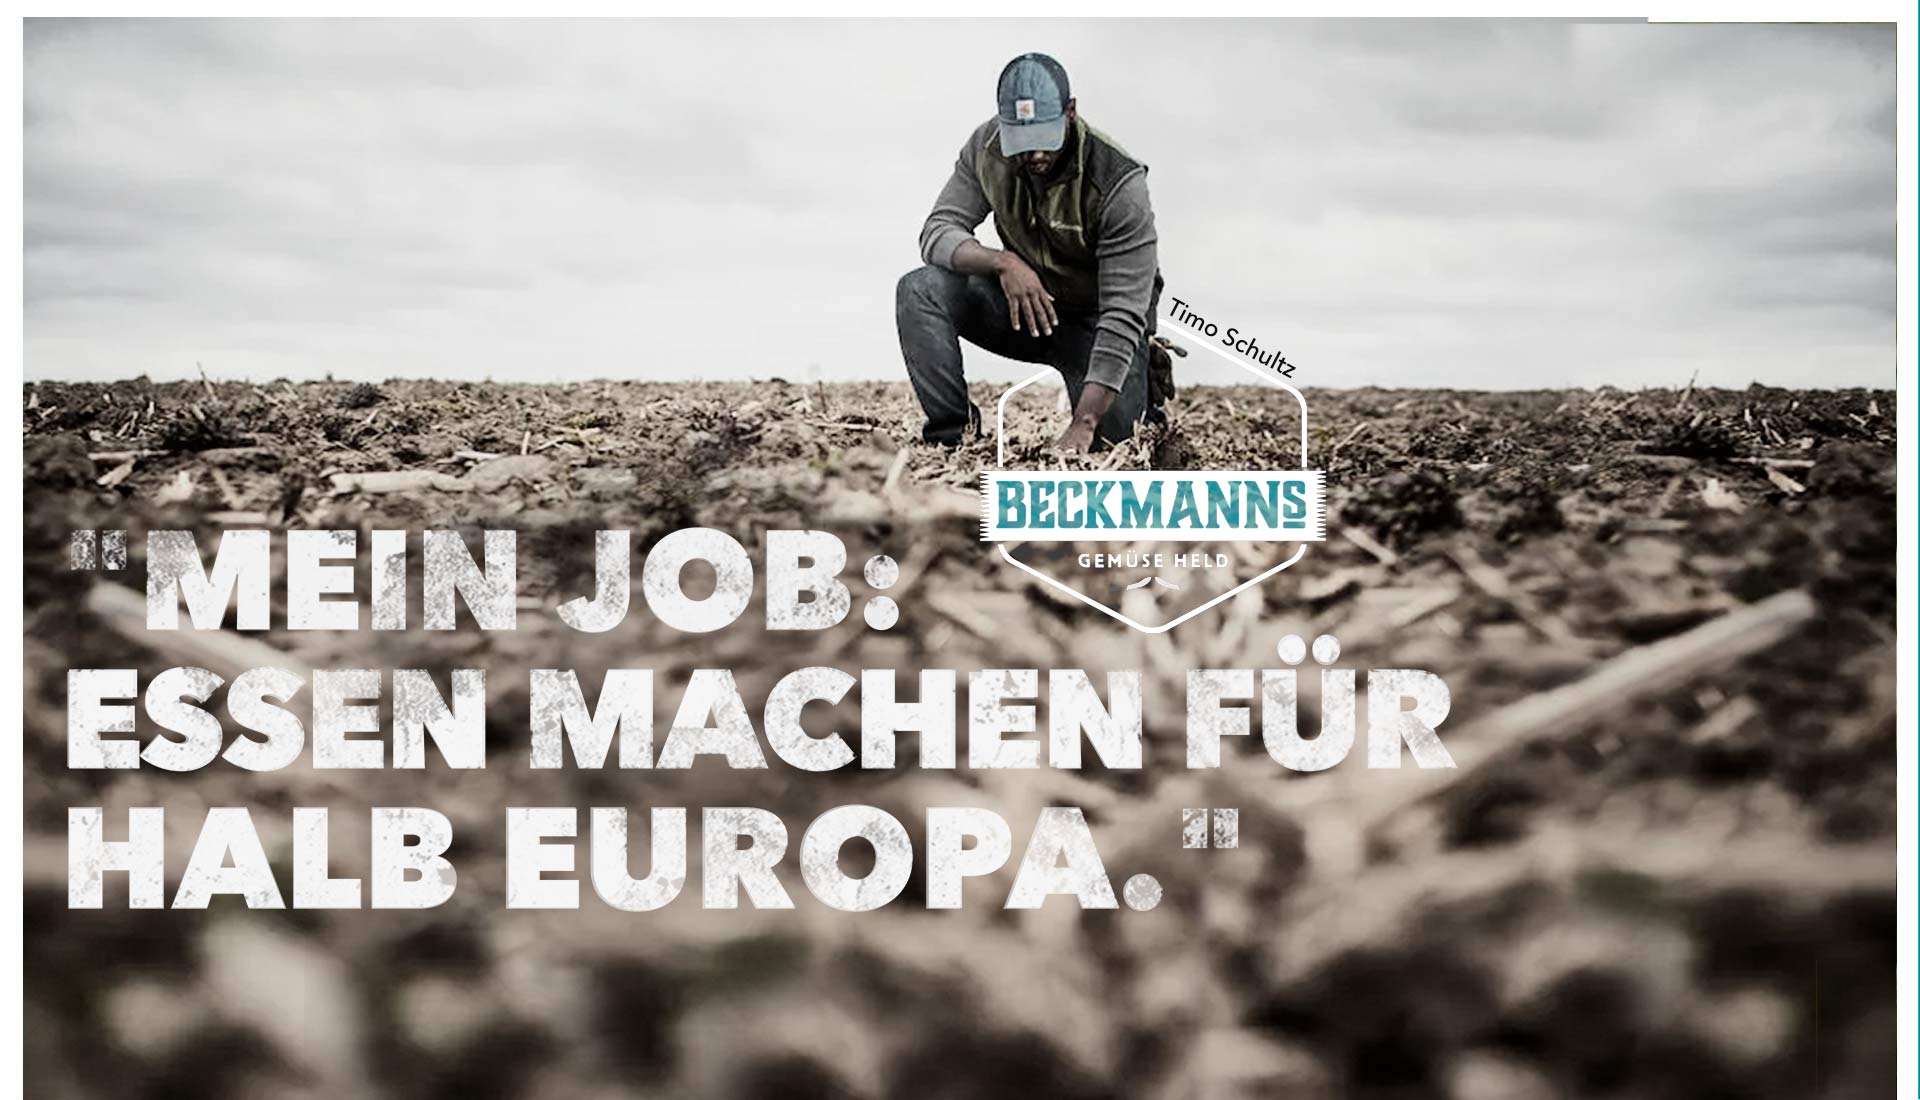 Beckmanns Gemüsehelden Header Mein Job: Essen machen für halb Europa